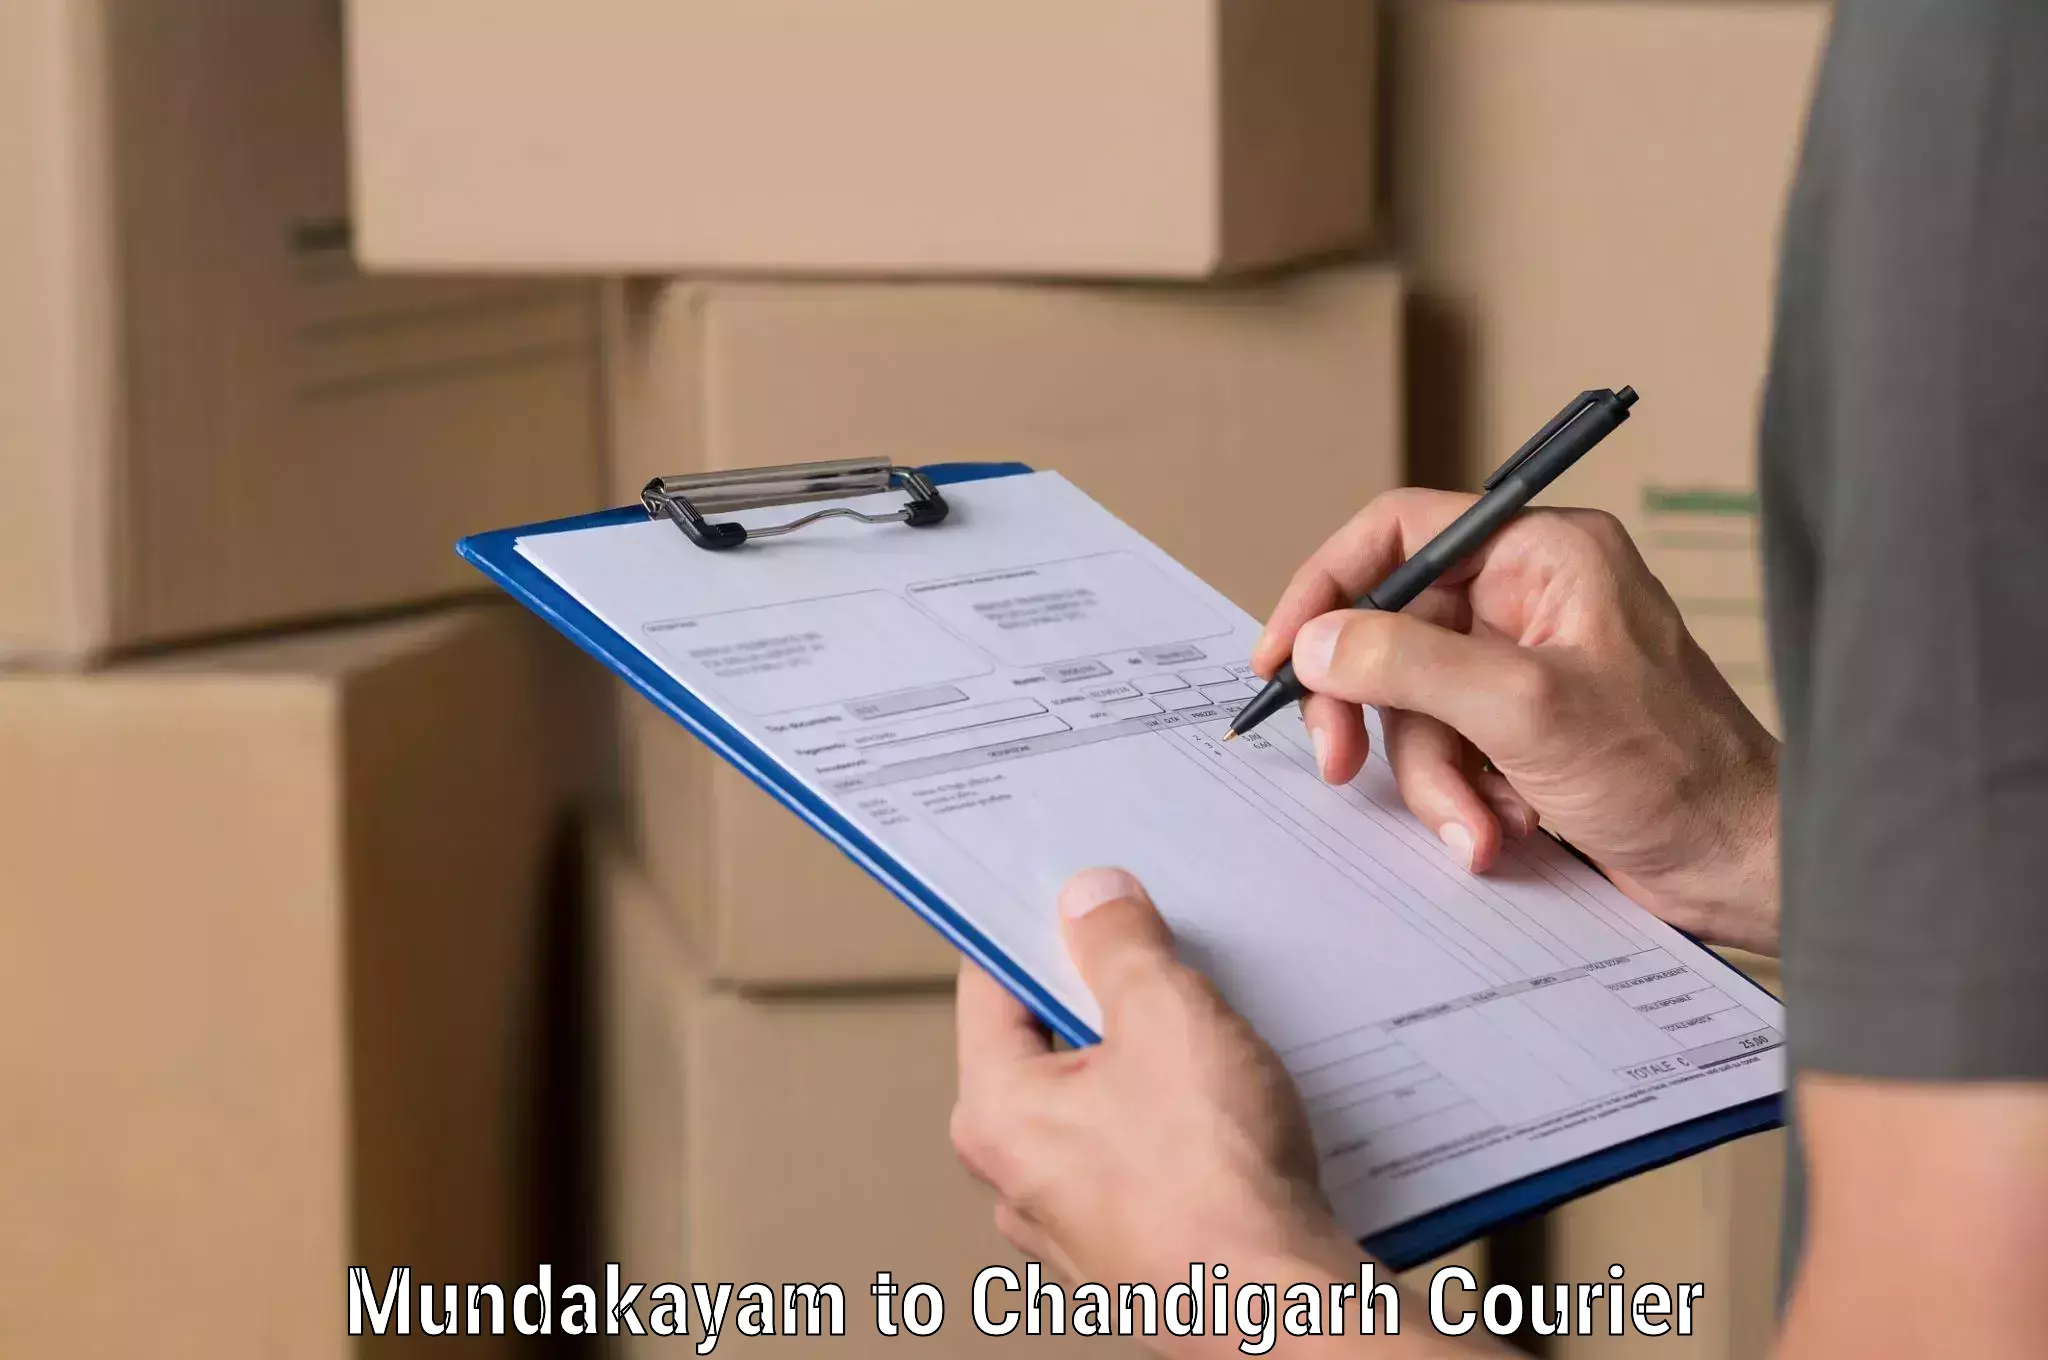 Express postal services Mundakayam to Chandigarh